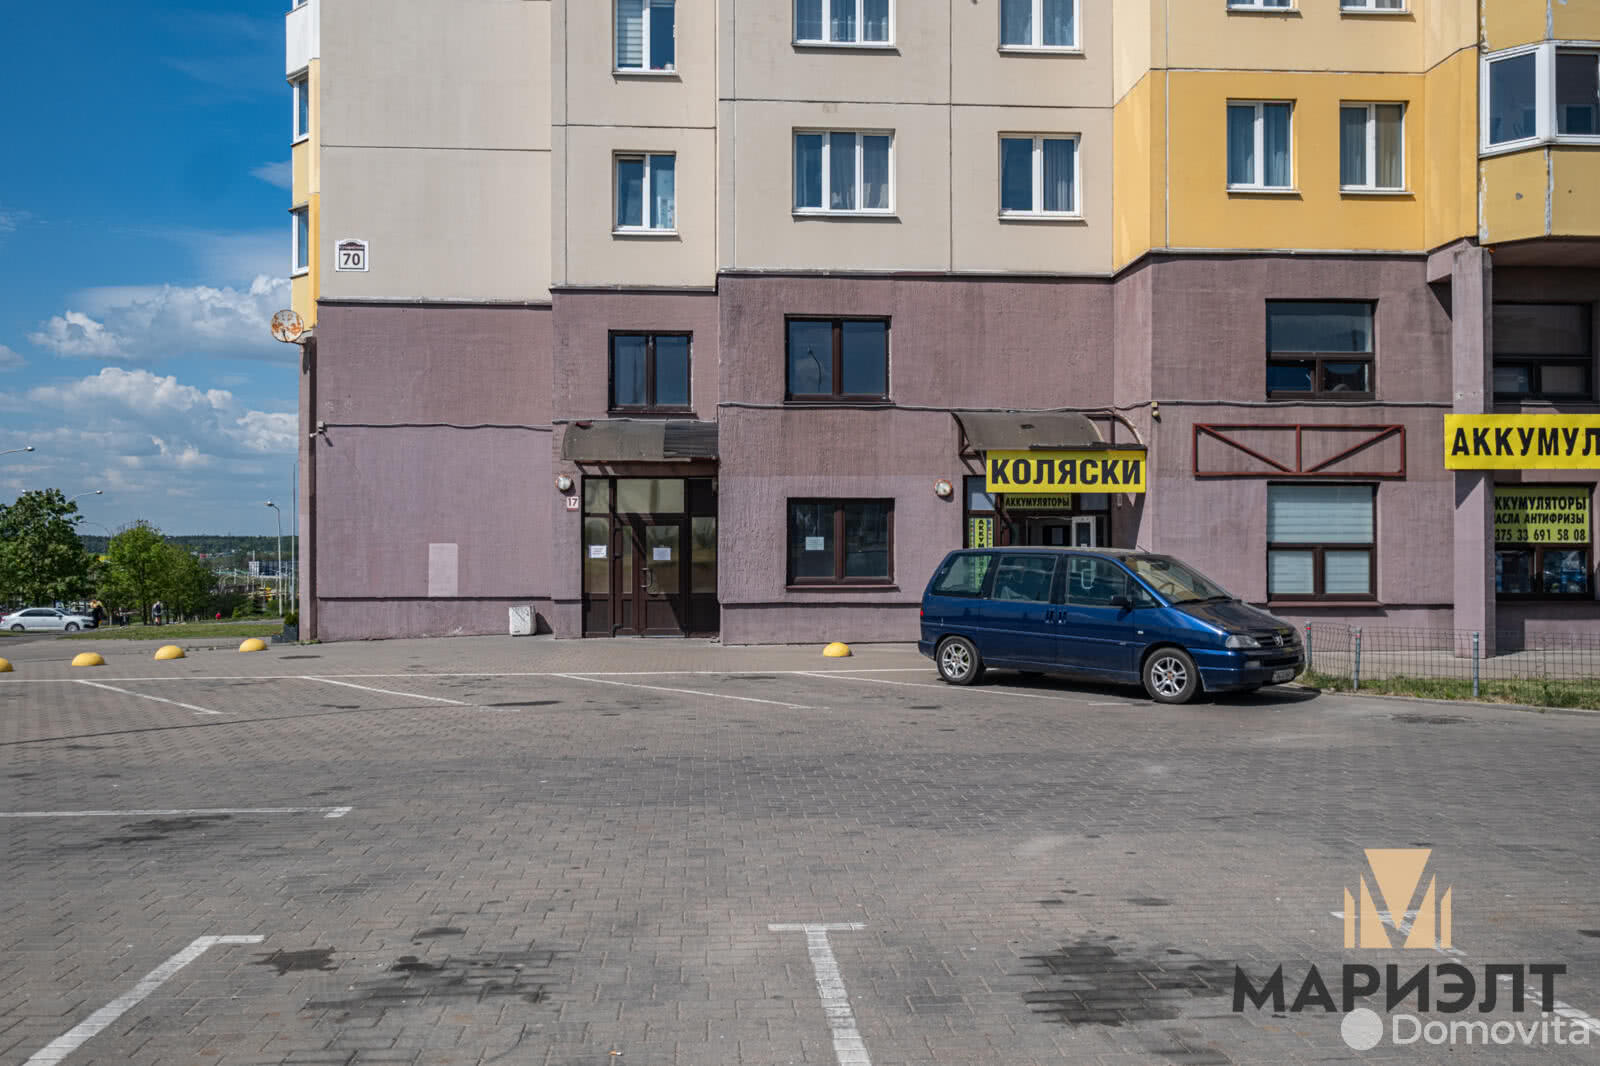 Аренда офиса на ул. Сухаревская, д. 70 в Минске, 1064EUR, код 12151 - фото 3